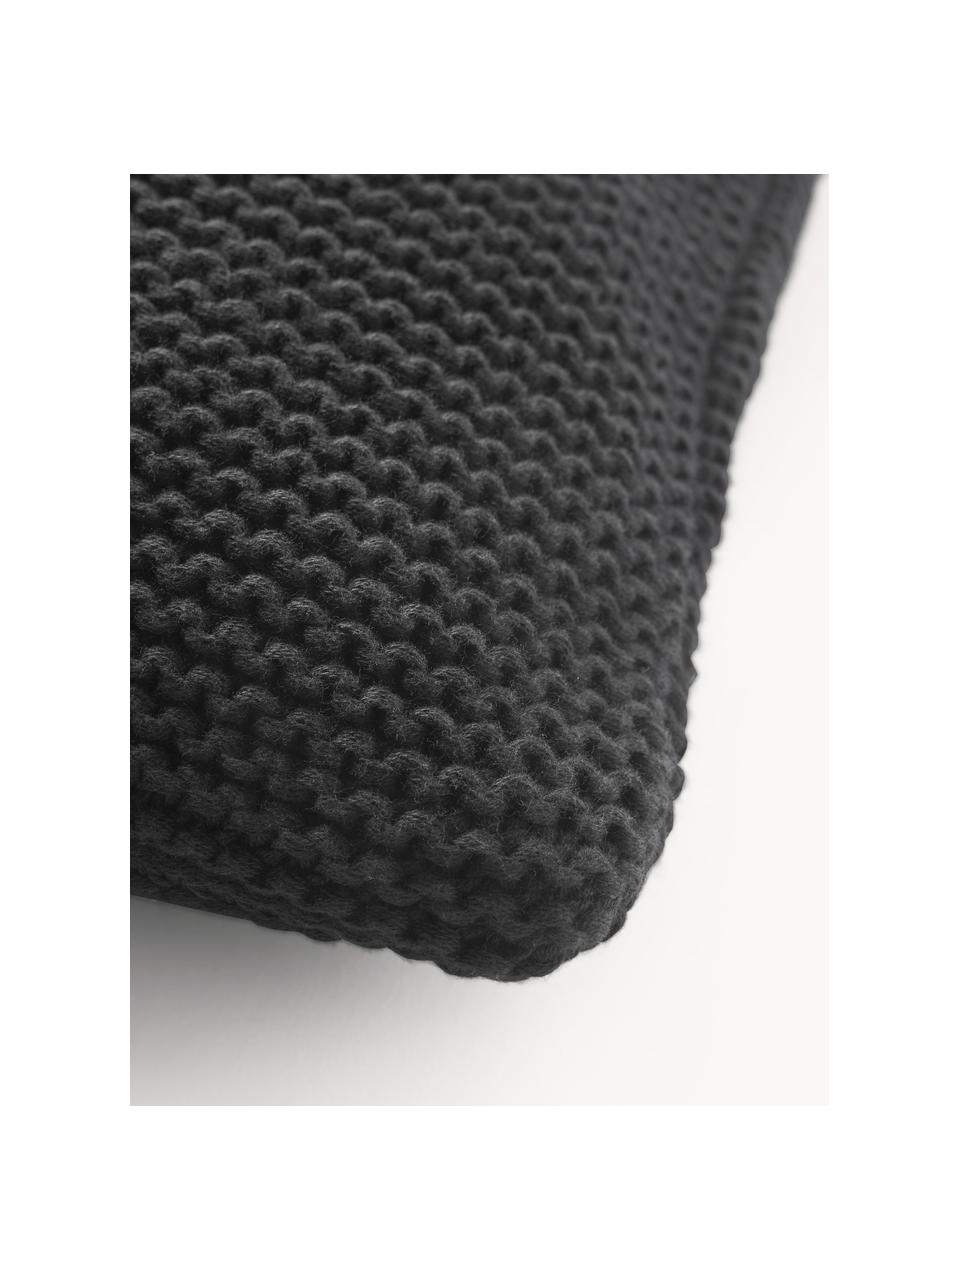 Copricuscino tessuto a maglia in cotone organico Adalyn, 100% cotone organico, certificato GOTS, Nero, Larg. 40 x Lung. 40 cm